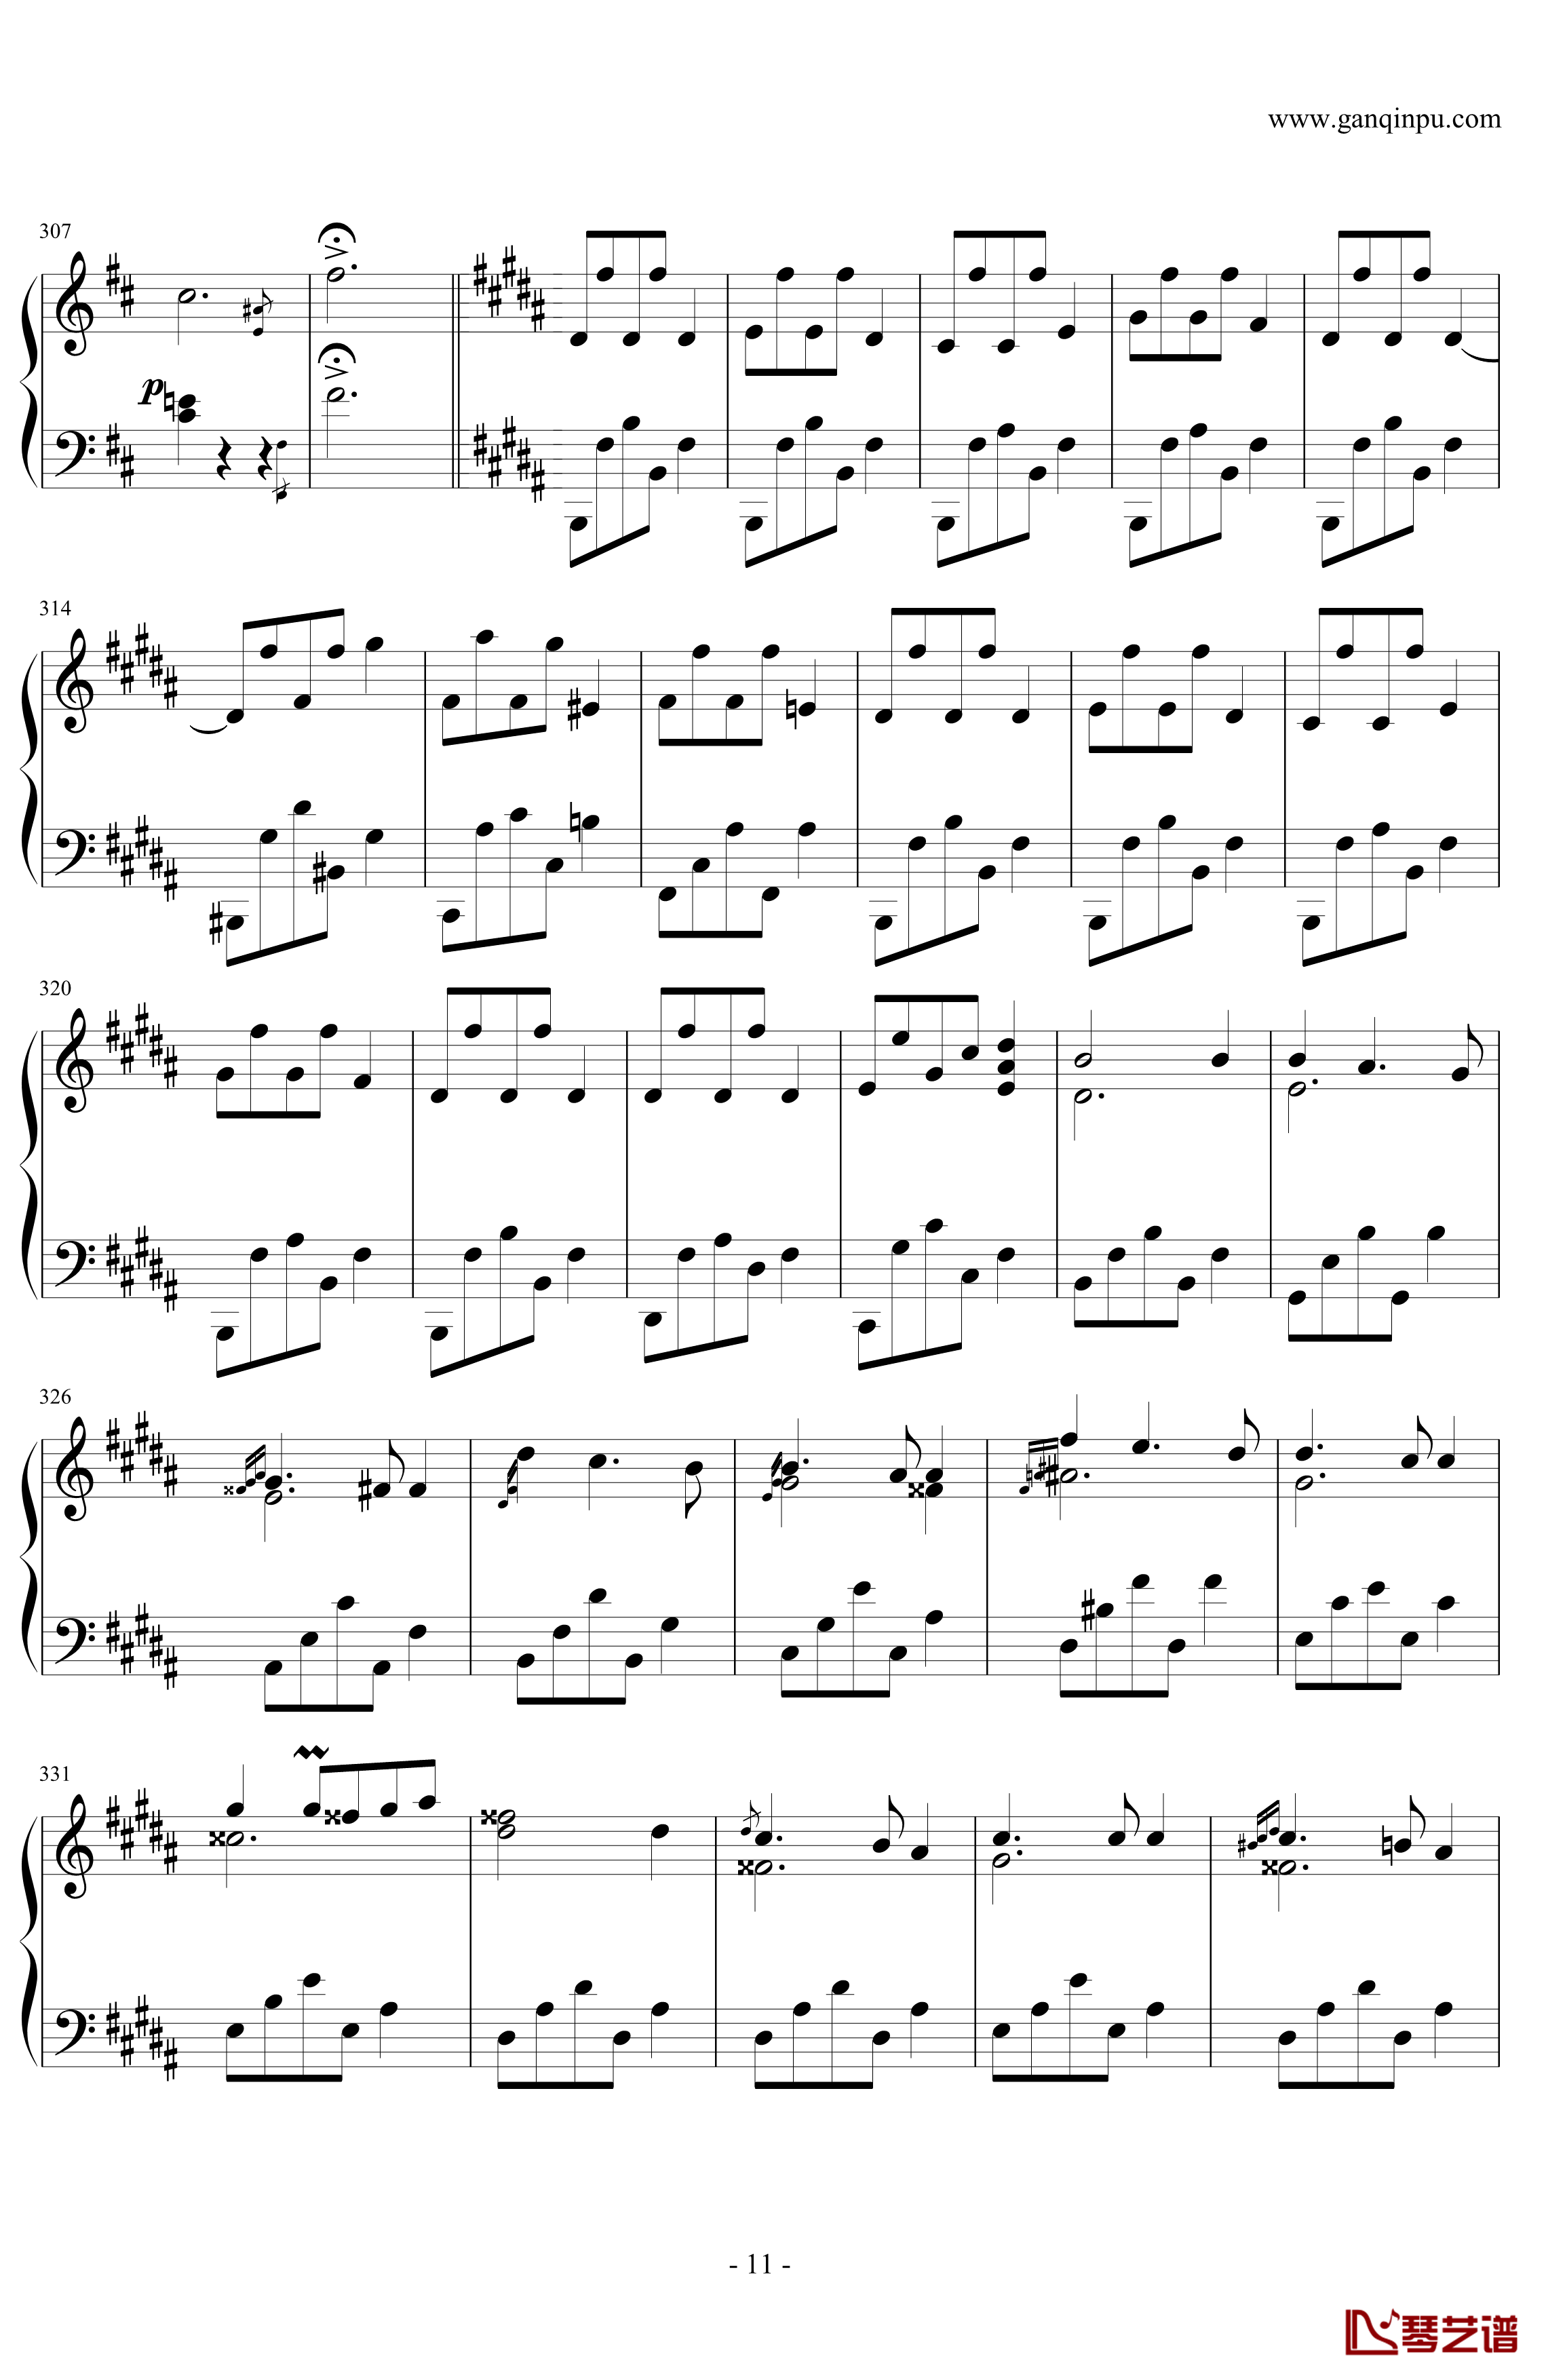 肖邦第一谐谑曲钢琴谱-肖邦-chopin11